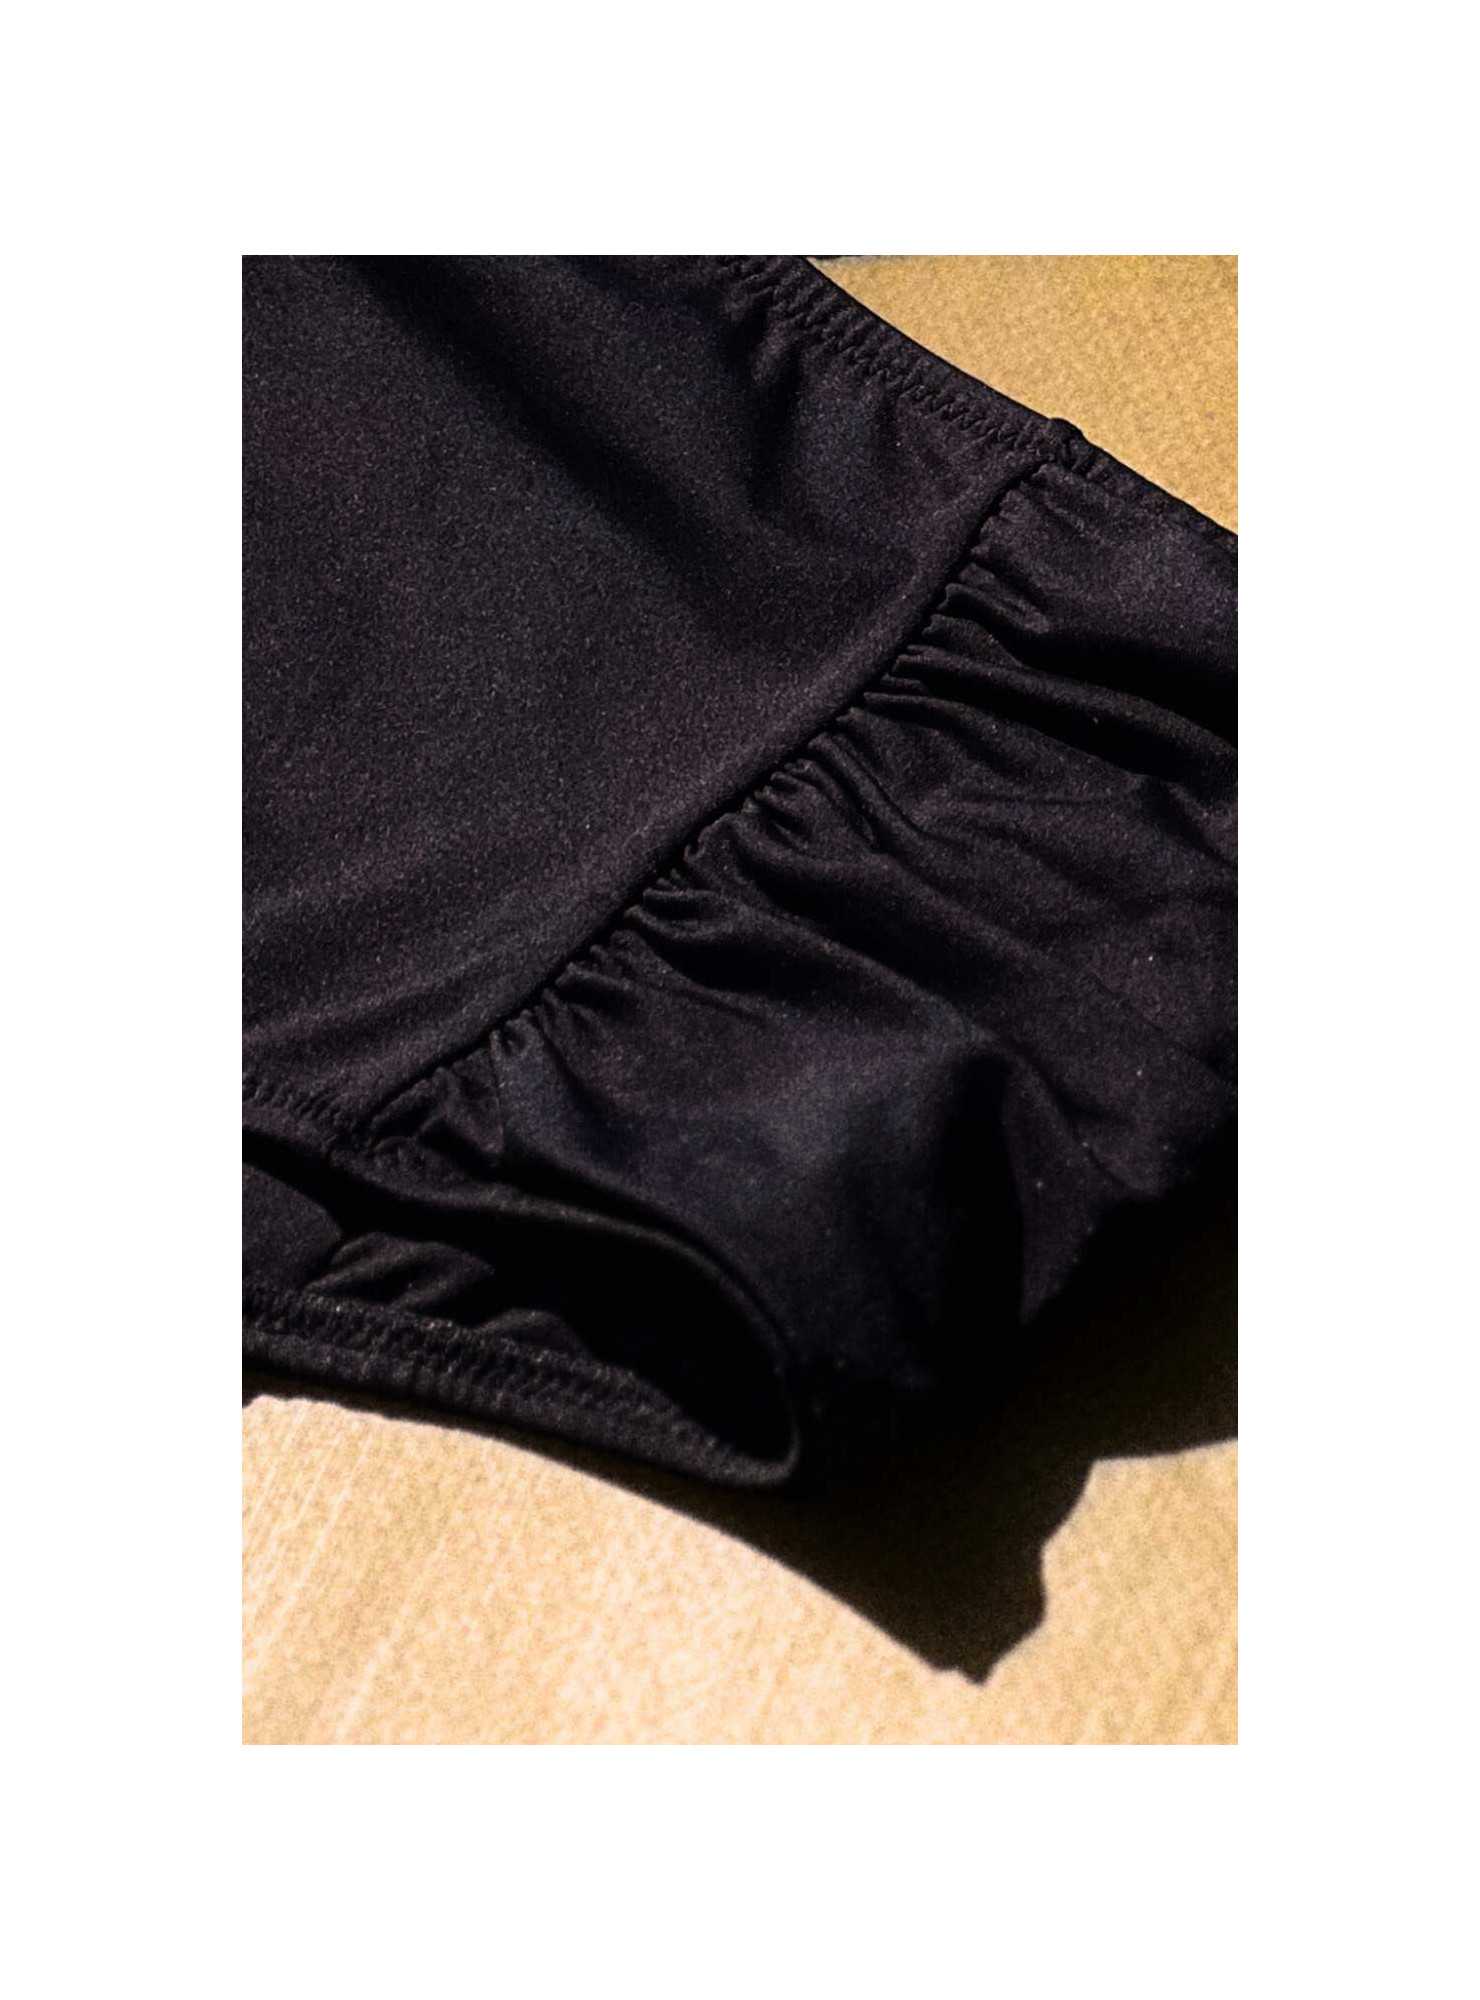 Bas de maillot culotte haute noire - Jolies Mômes, lingerie française éco-responsable. Fabrication Espagne série limitée